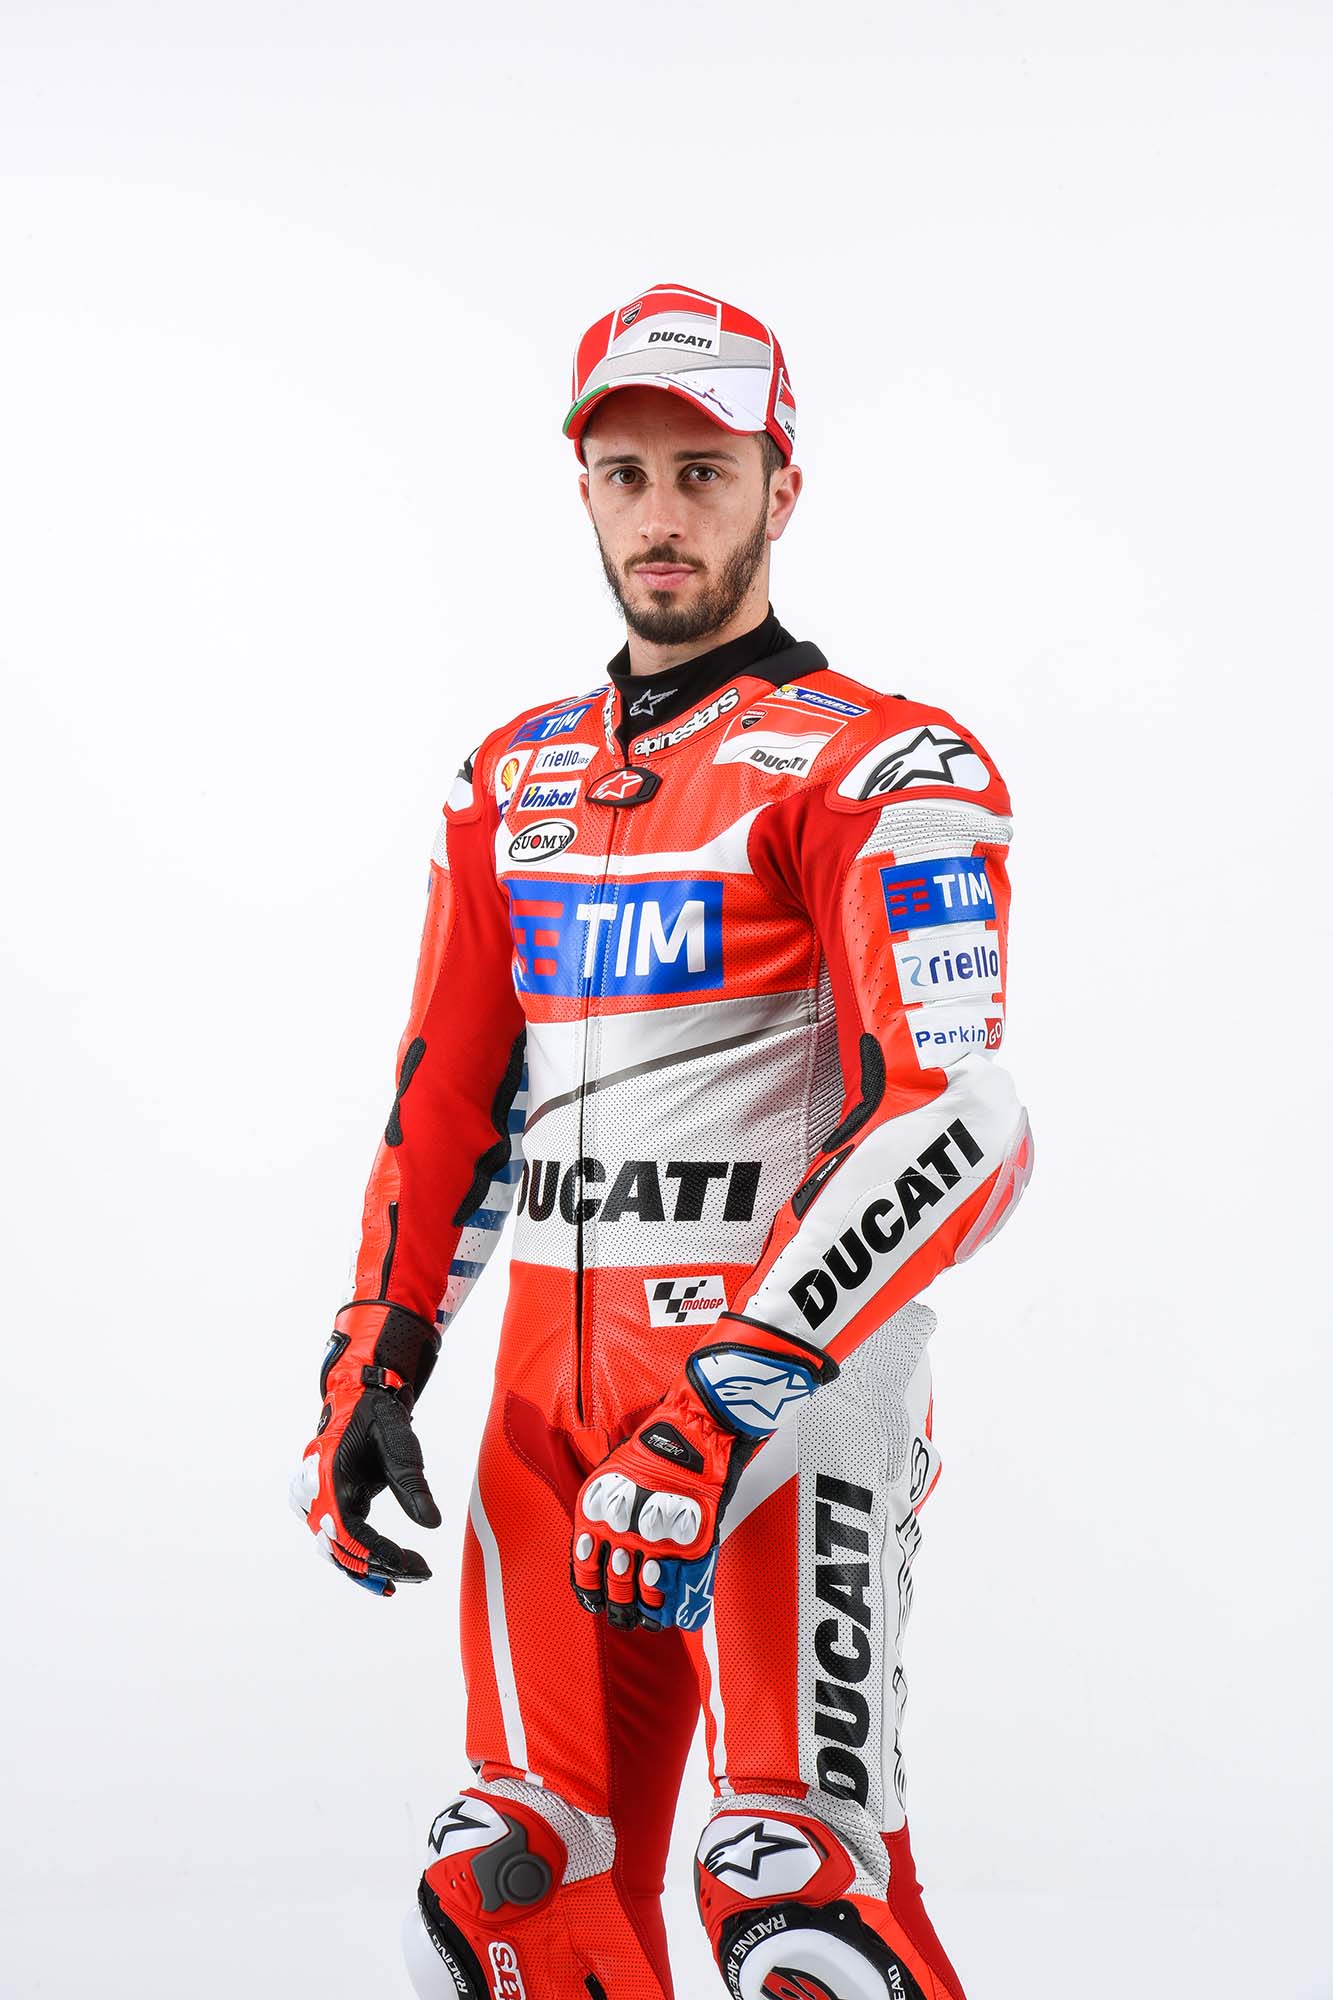 2016 Ducati Desmosedici GP16 Picture Galore - autoevolution